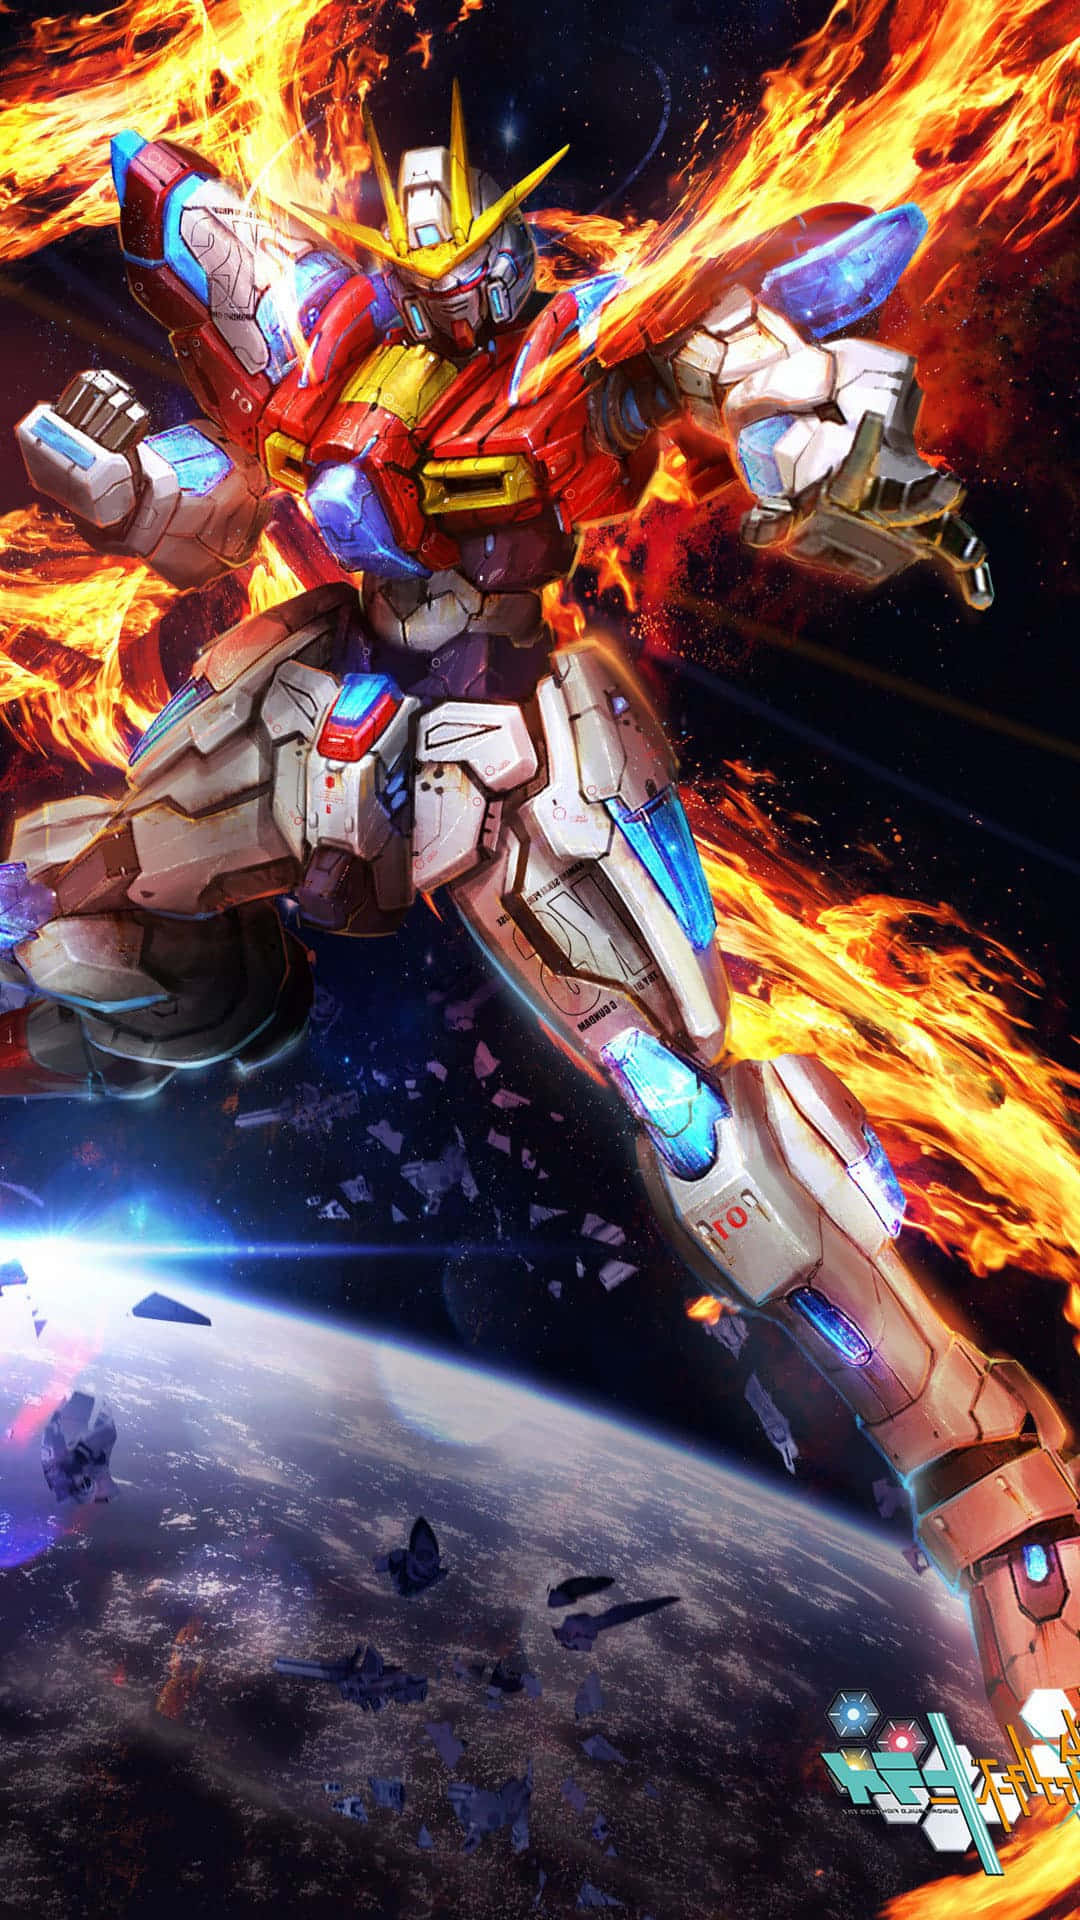 Billedekrigen Mellem Kamprobotter - Konfrontation Mellem Gundam-krigerne.